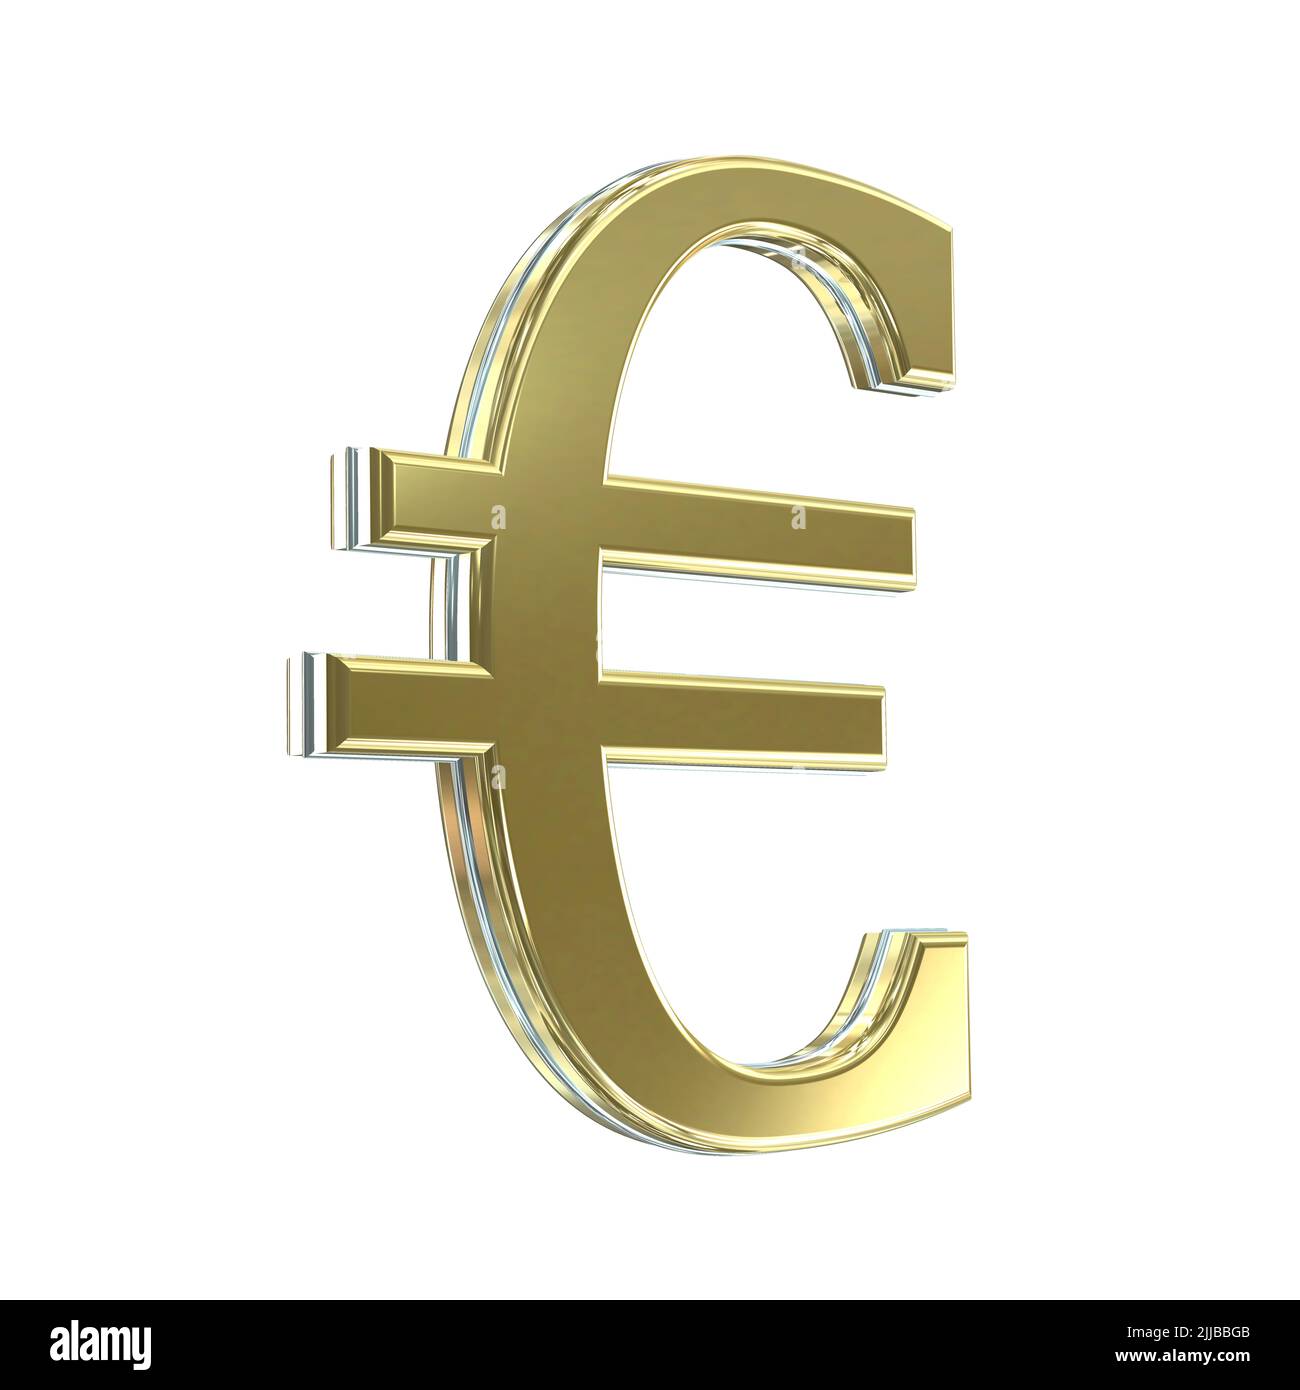 3D oro plata símbolo de la moneda del euro símbolos signo signos recortados aislados sobre fondo blanco Foto de stock